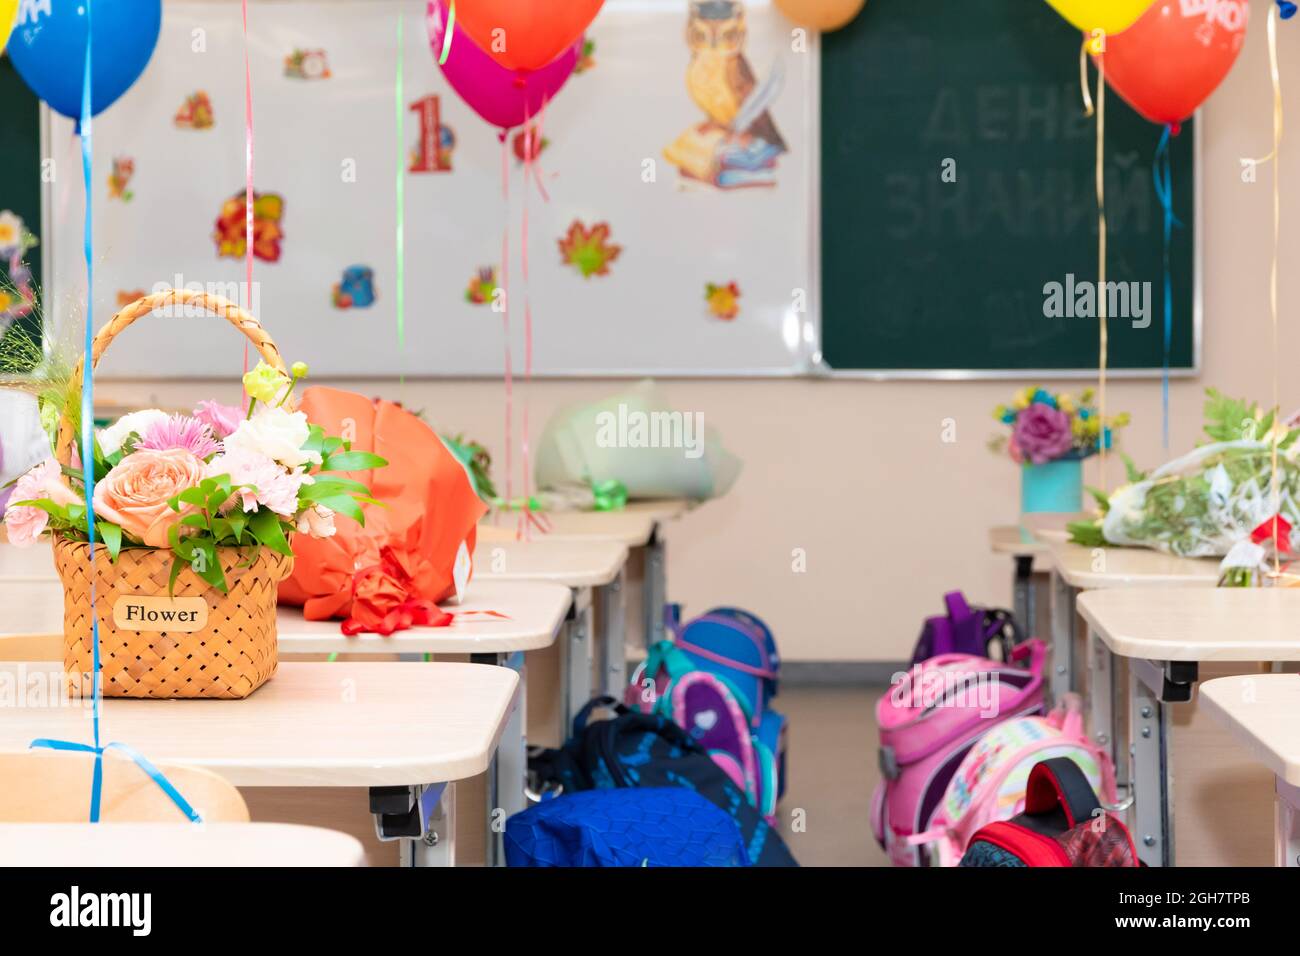 Lezione di scuola il 1 settembre senza studenti con palloncini colorati e fiori su scrivanie sullo sfondo del consiglio di scuola. Le iscrizioni Foto Stock